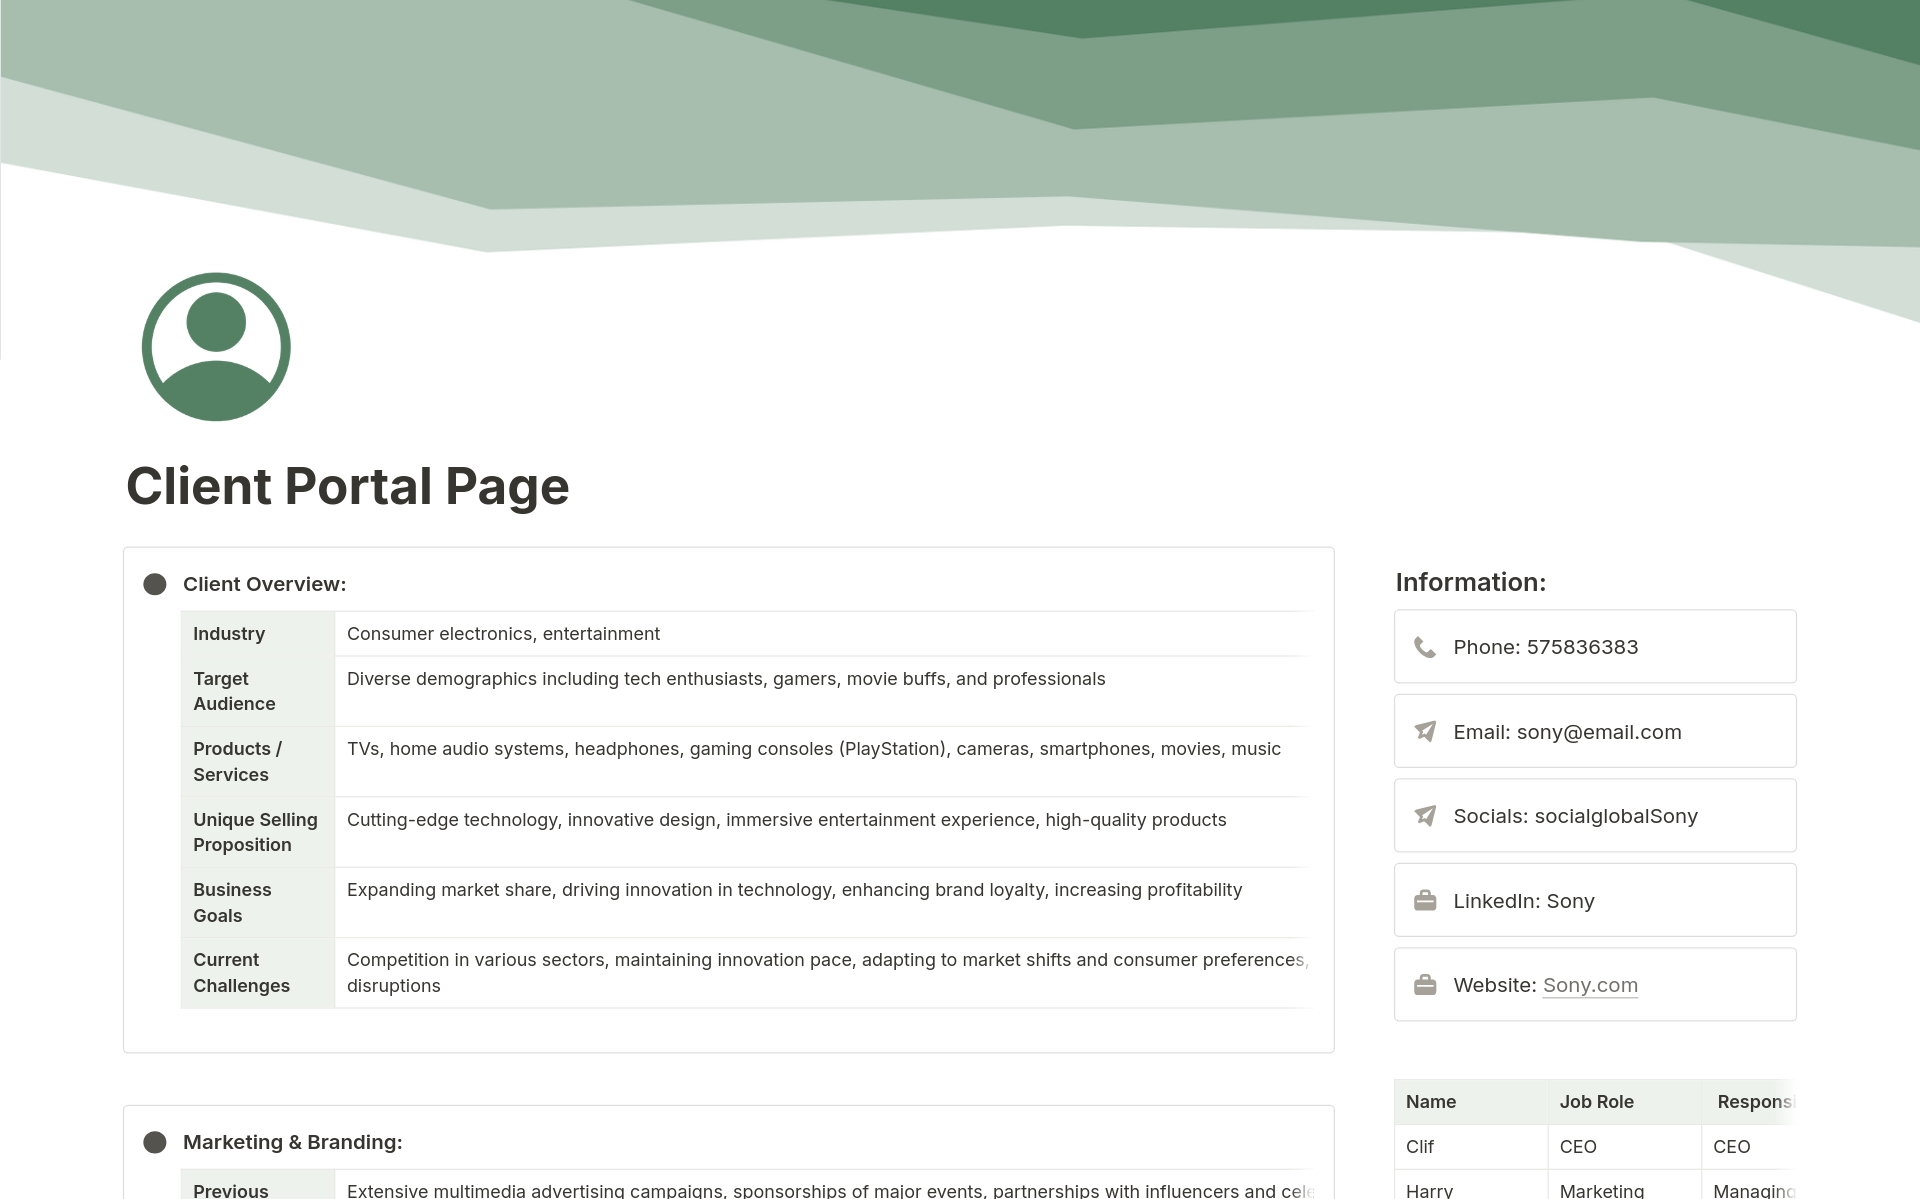 Vista previa de una plantilla para Client Portal